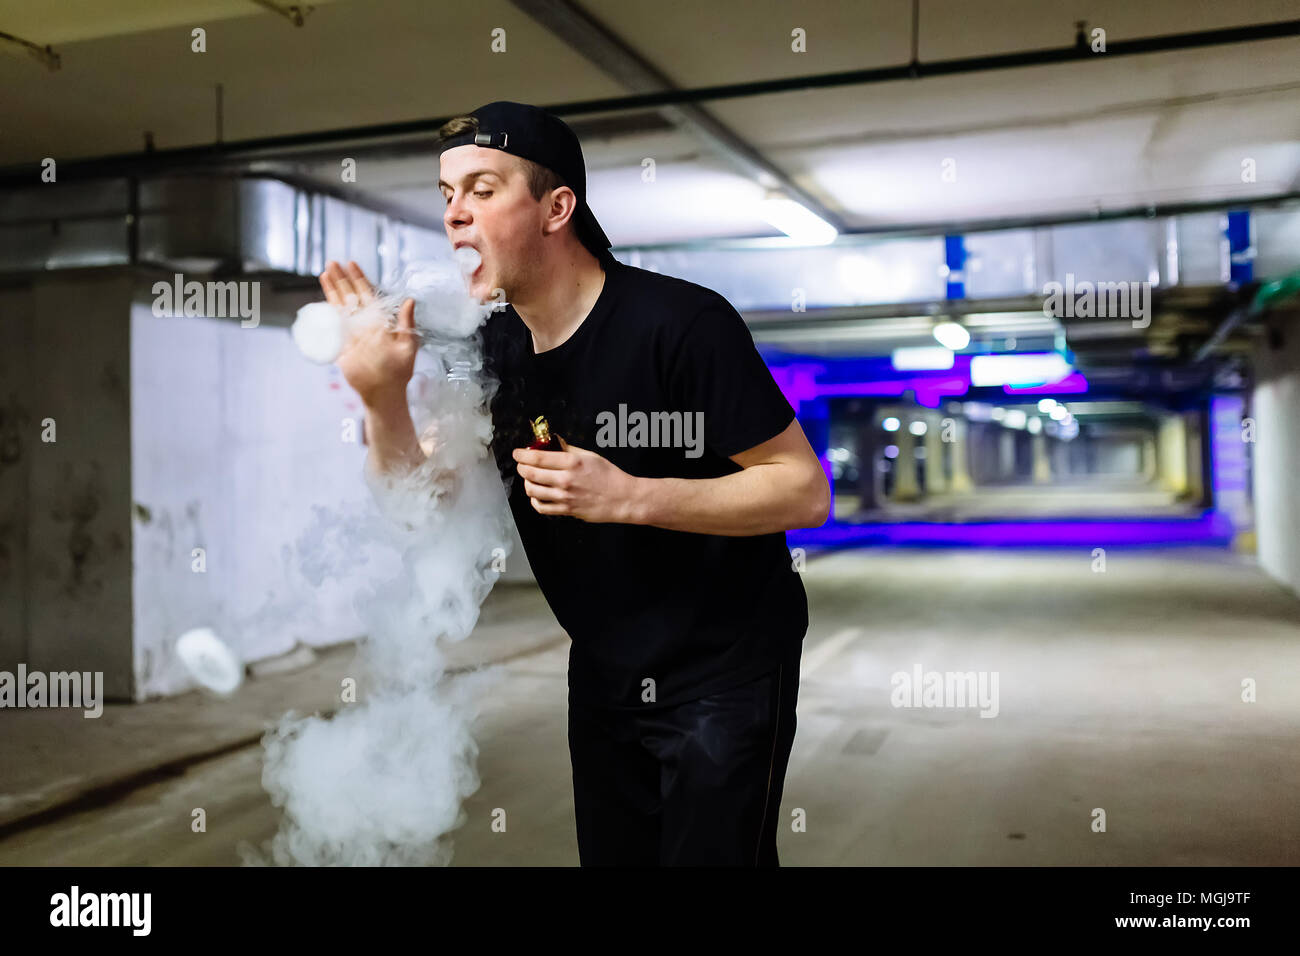 Mann in Gap Rauch eine elektronische Zigarette und Releases Wolken von Dampf Ausführen verschiedener Art vaping Tricks Stockfoto